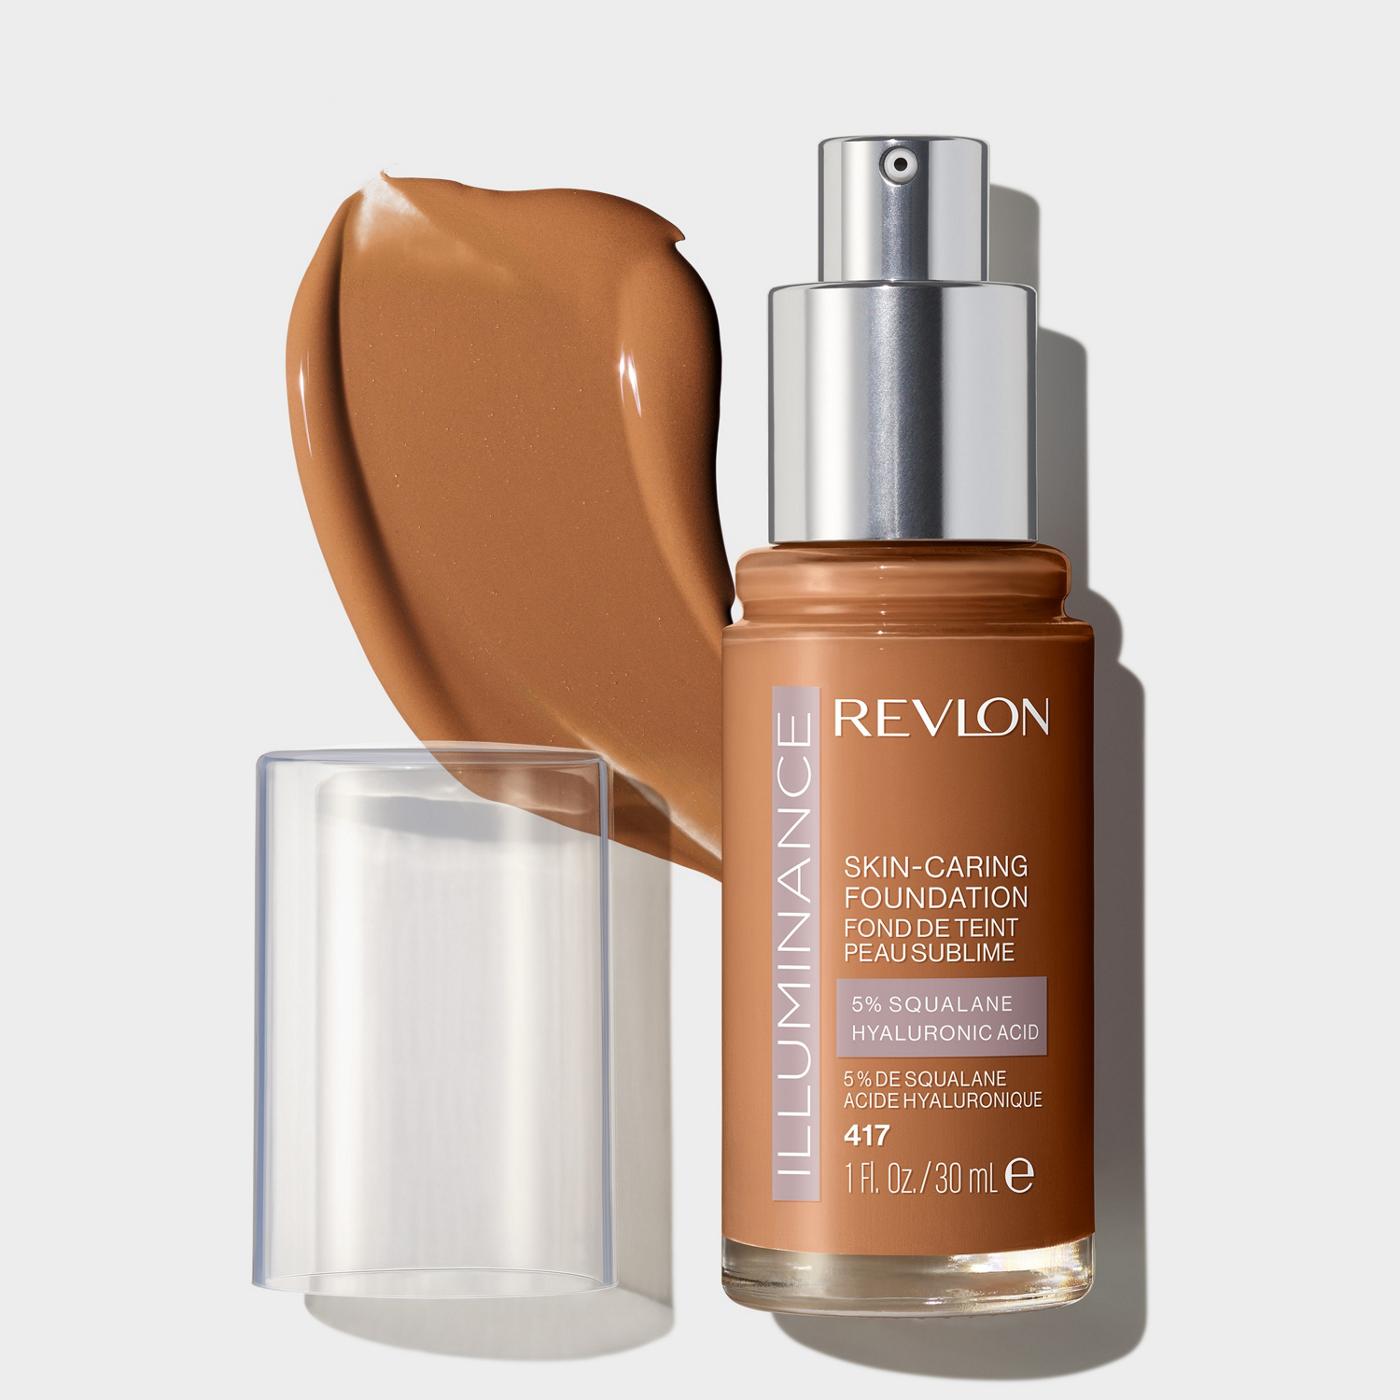 Revlon Illuminance Skin-Caring Foundation -Warm Caramel; image 2 of 3